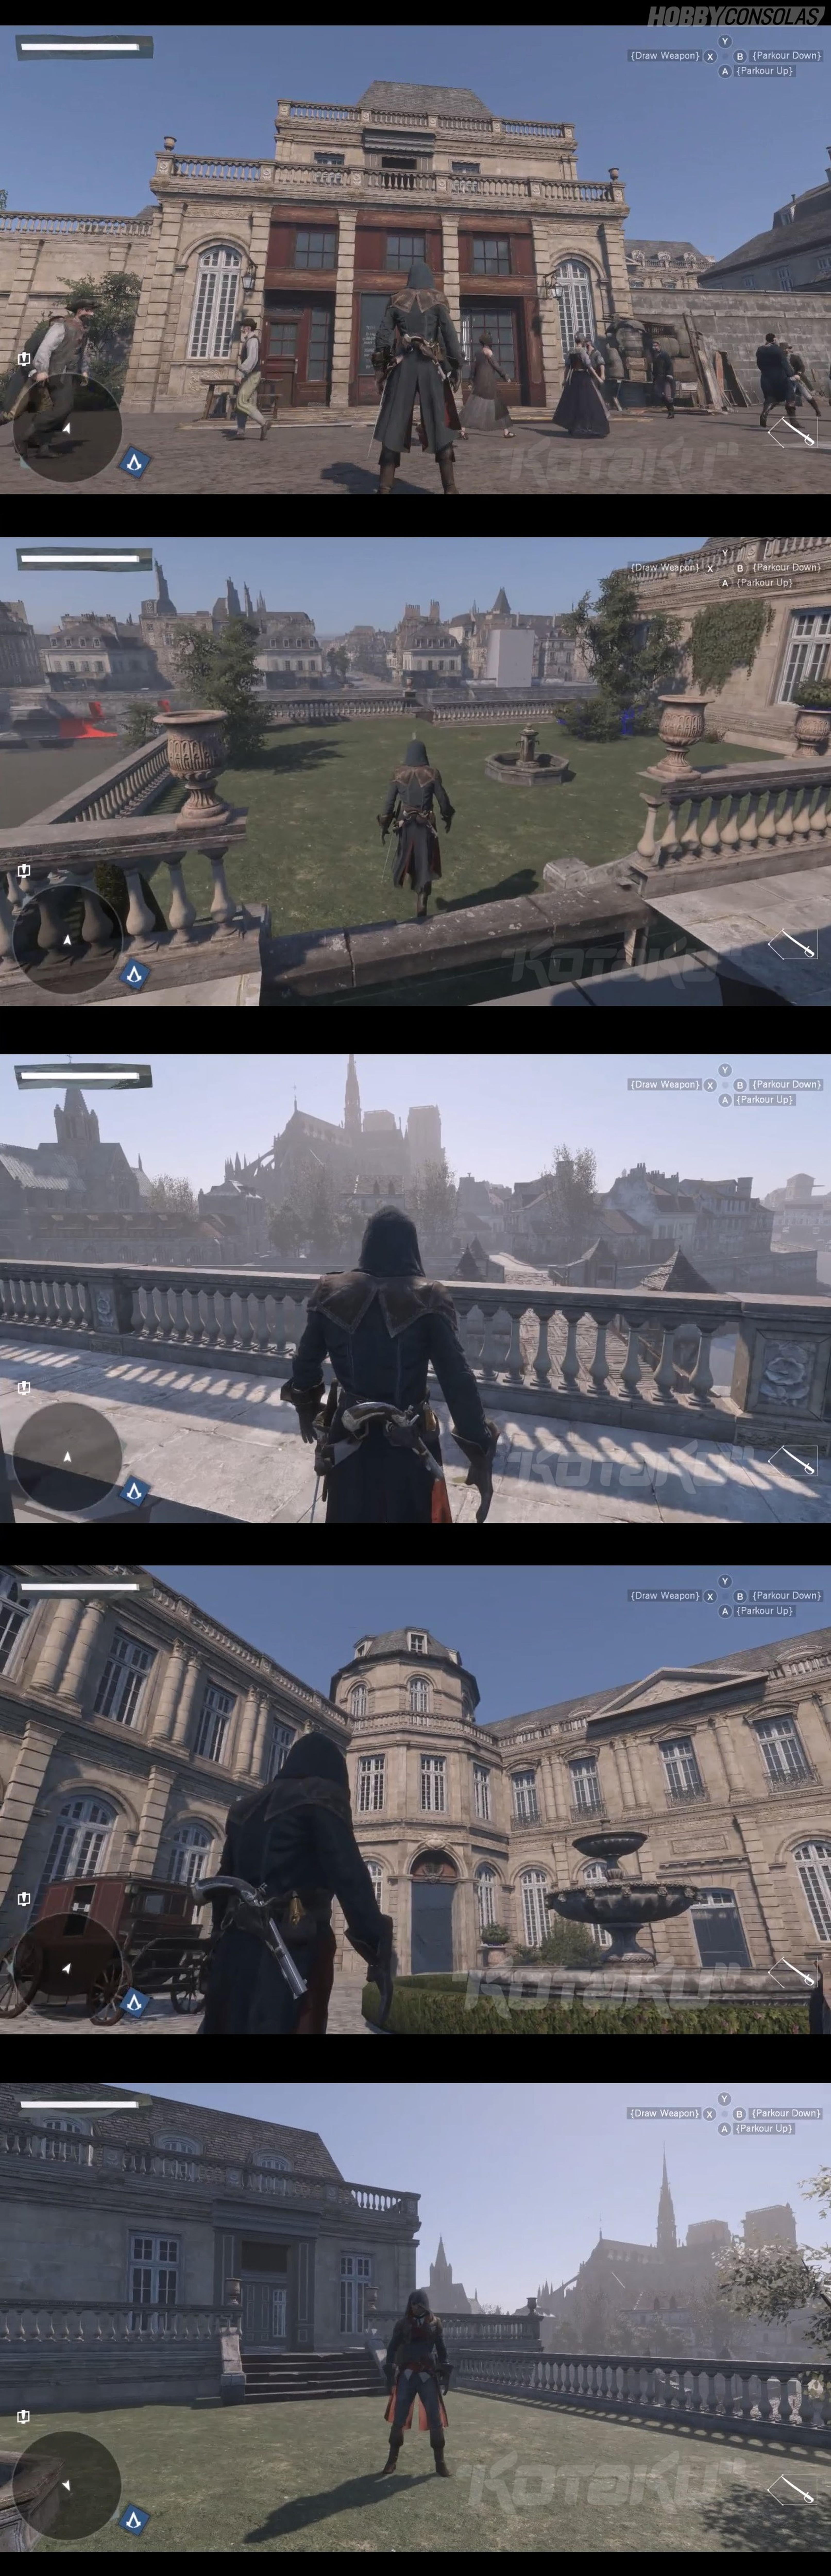 Filtradas las imágenes de Unity, el nuevo Assassin's Creed